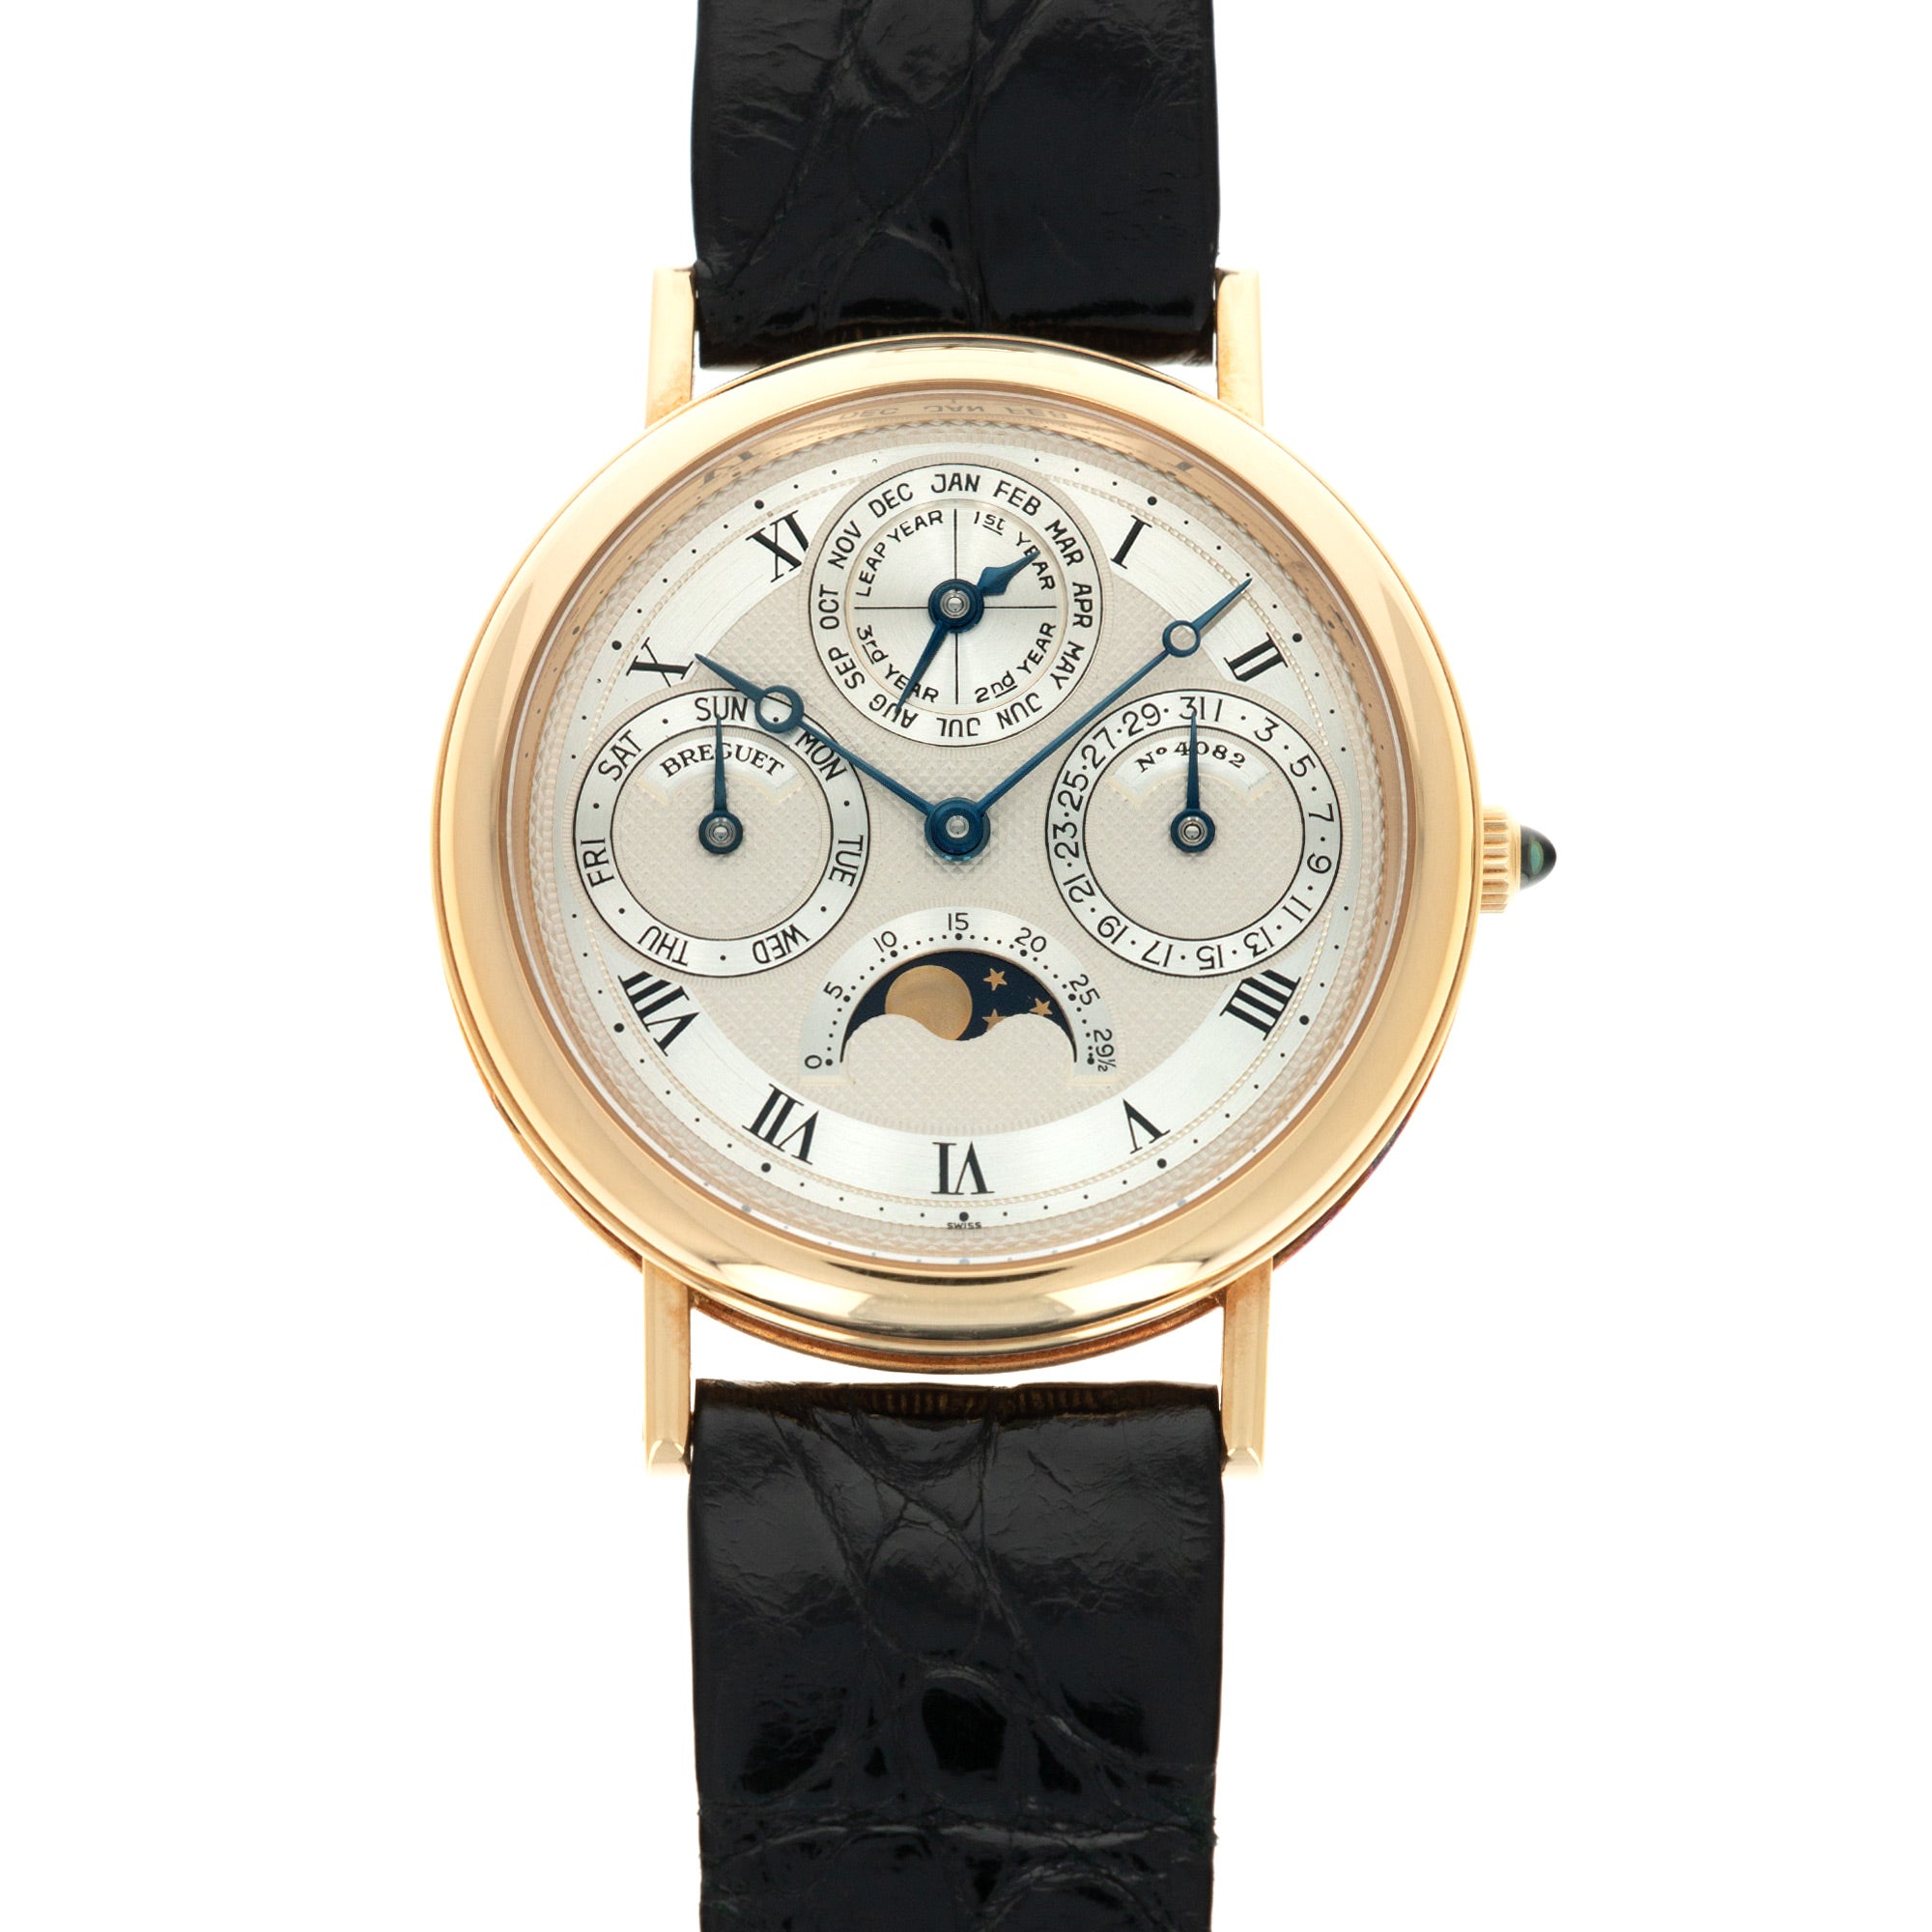 Breguet - Breguet Automatic Perpetual Calendar Watch Ref. 3050 - The Keystone Watches